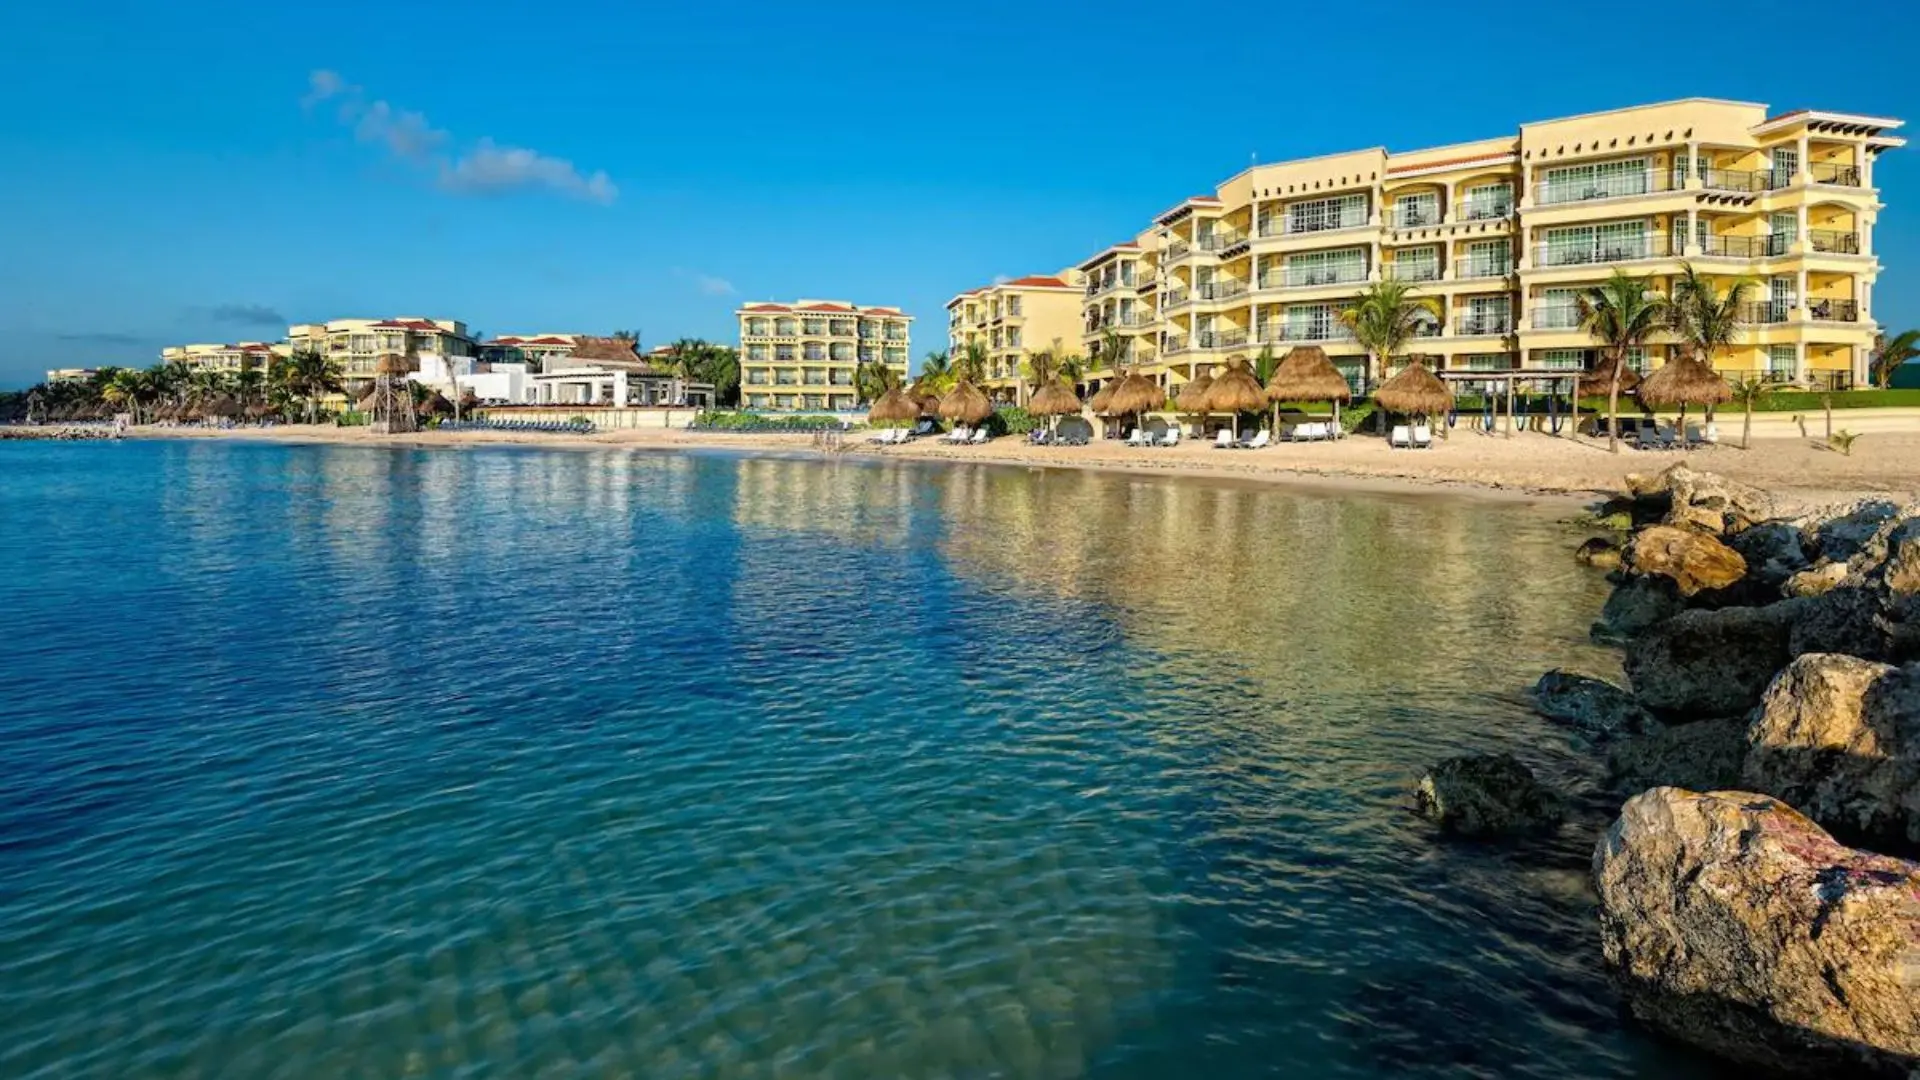 Hotel Marina El Cid Spa & Beach Resort (1)